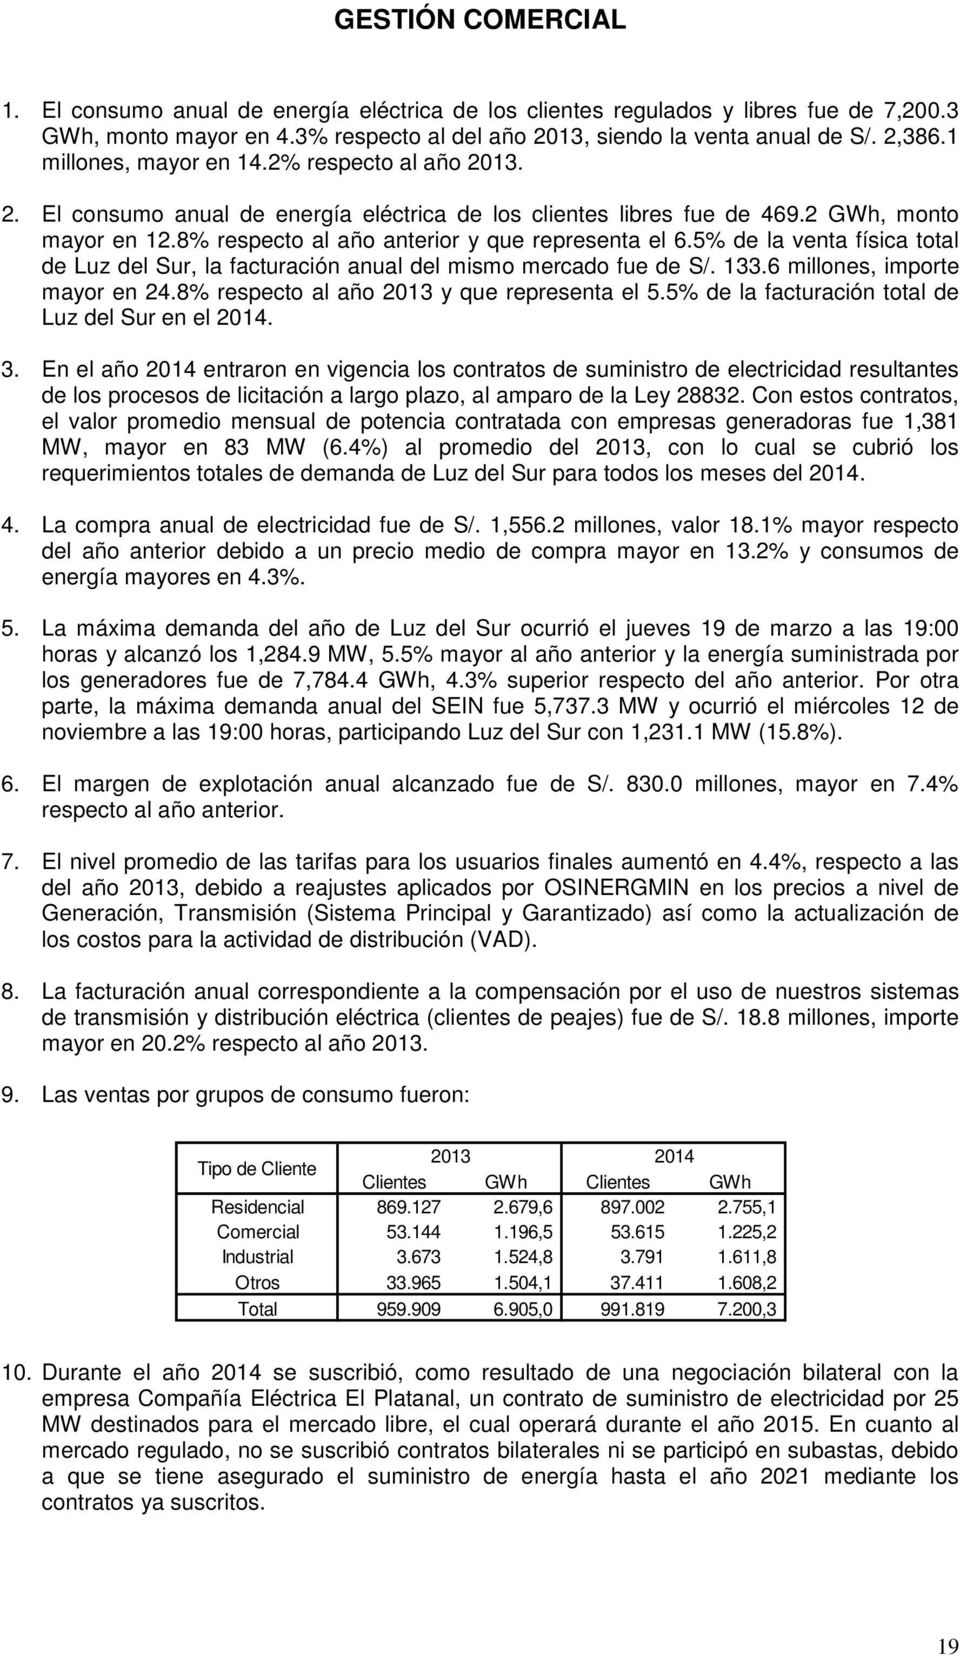 5% de la venta física total de Luz del Sur, la facturación anual del mismo mercado fue de S/. 133.6 millones, importe mayor en 24.8% respecto al año 2013 y que representa el 5.